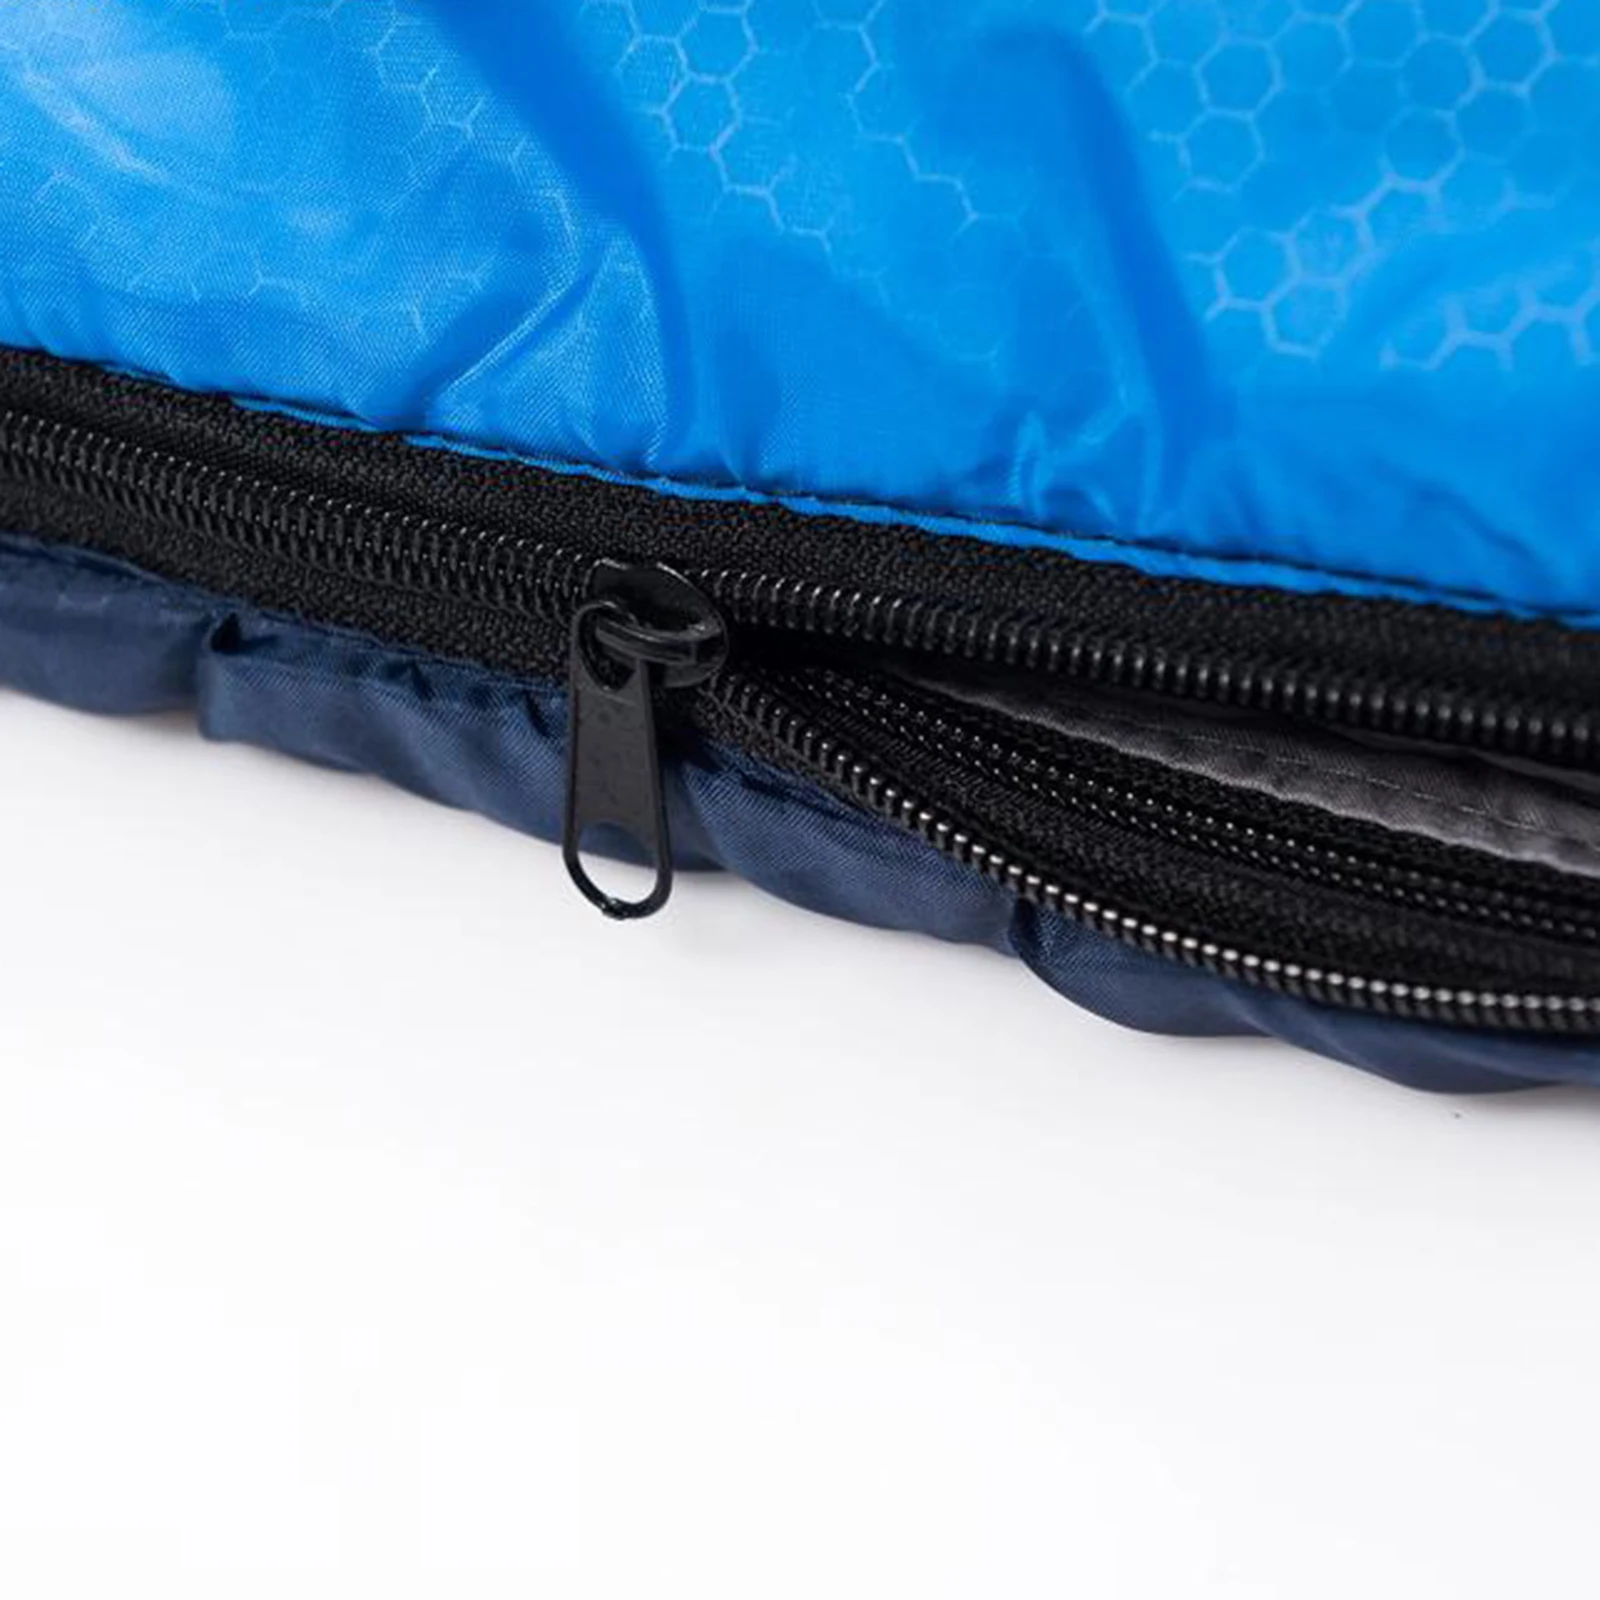 3-4 Season Sleeping Bag Single Suit Case Camping Hiking Outdoor Envelope Zip Up Sleeping Bag Waterproof Backpacking